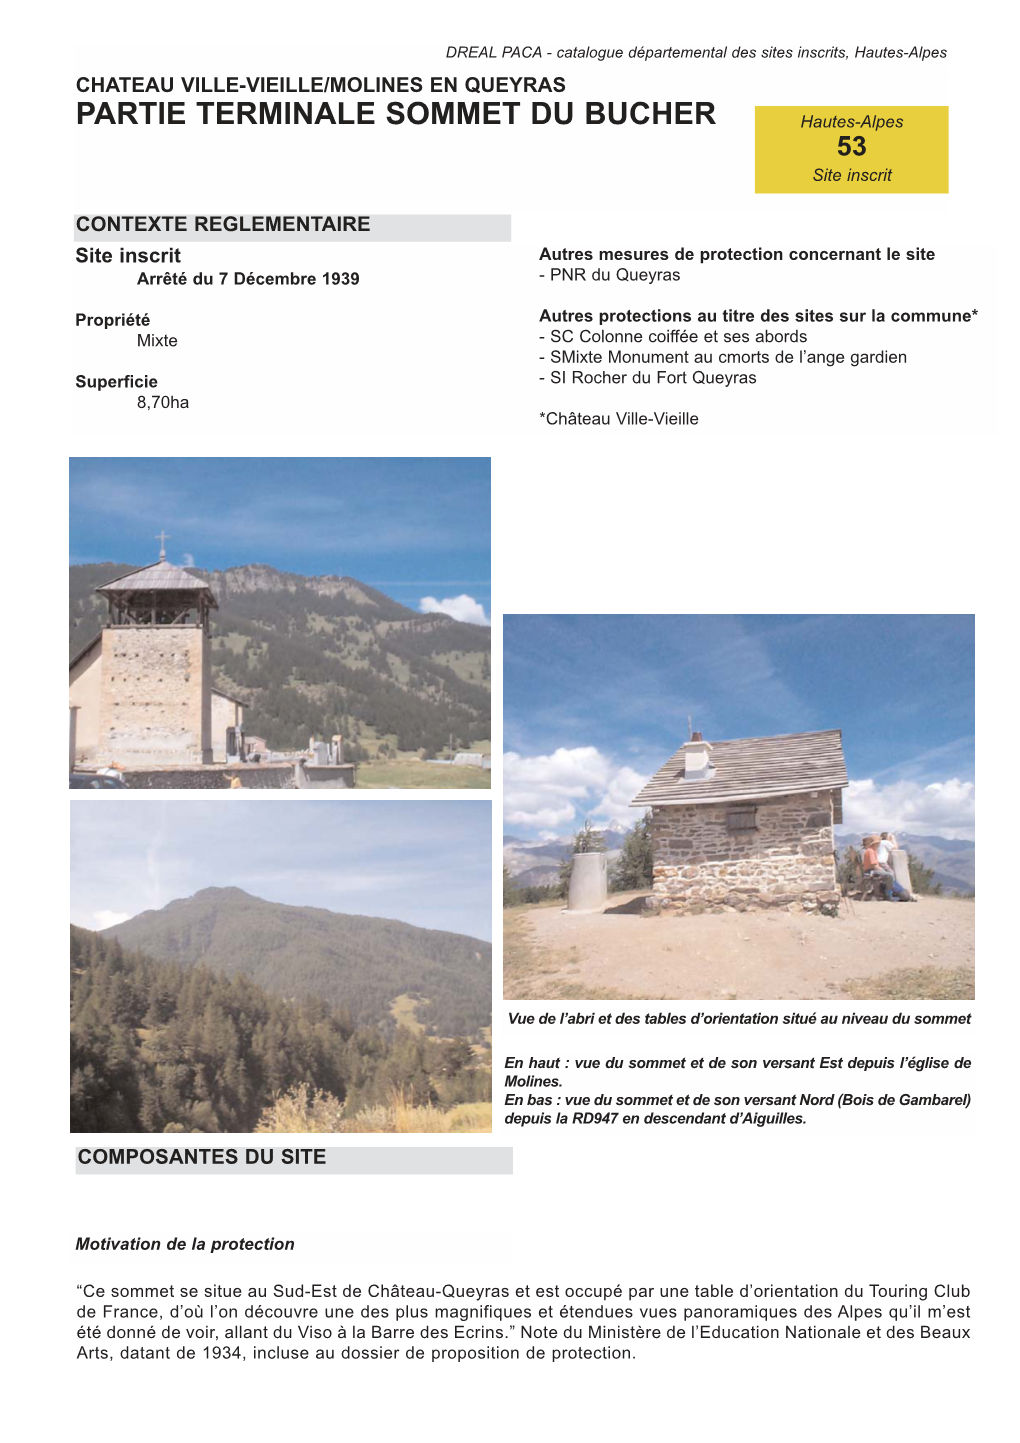 PARTIE TERMINALE SOMMET DU BUCHER Hautes-Alpes 53 Site Inscrit